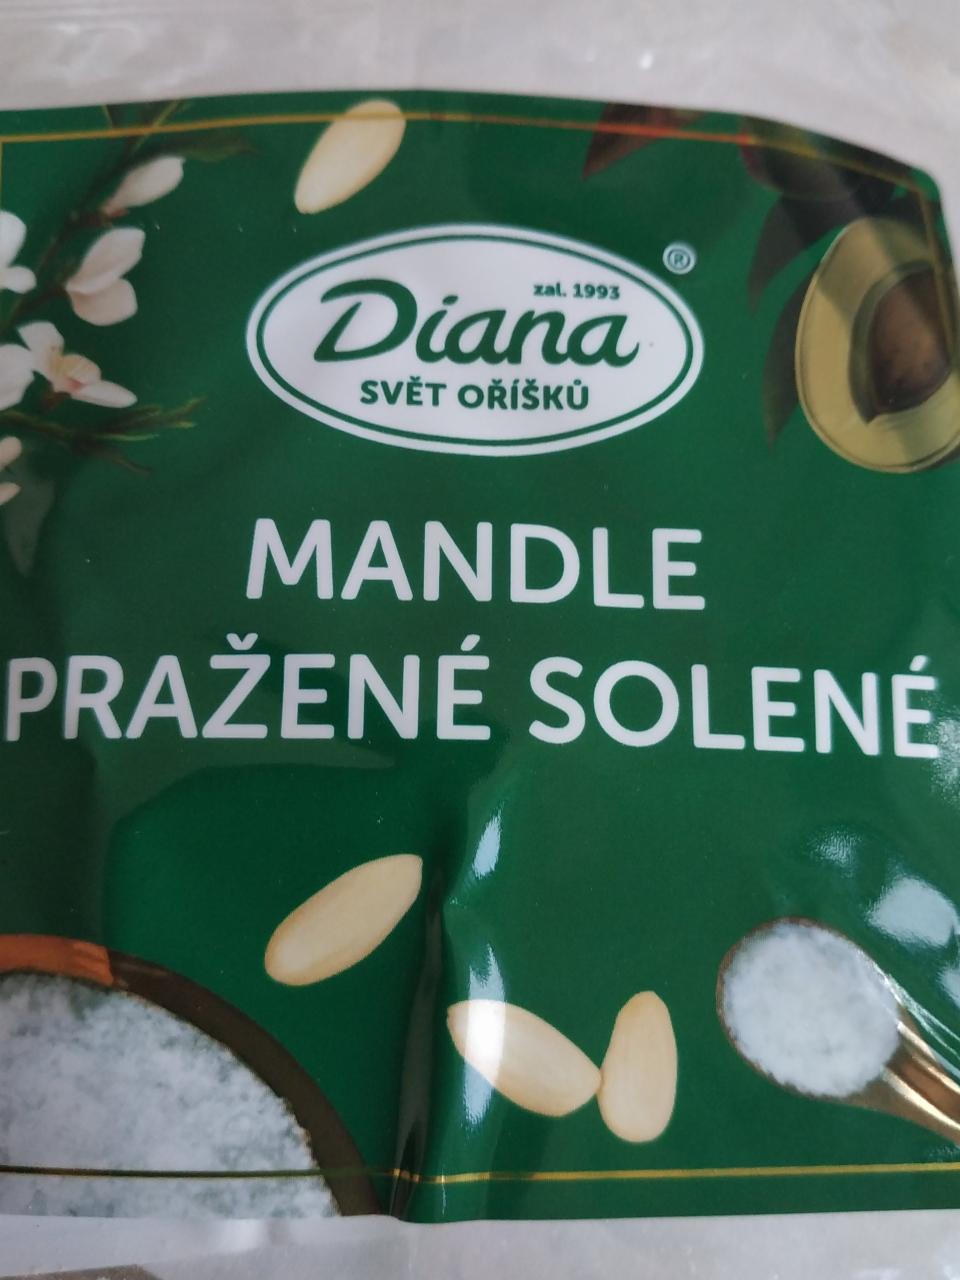 Fotografie - Mandle pražené solené Diana Svět oříšků